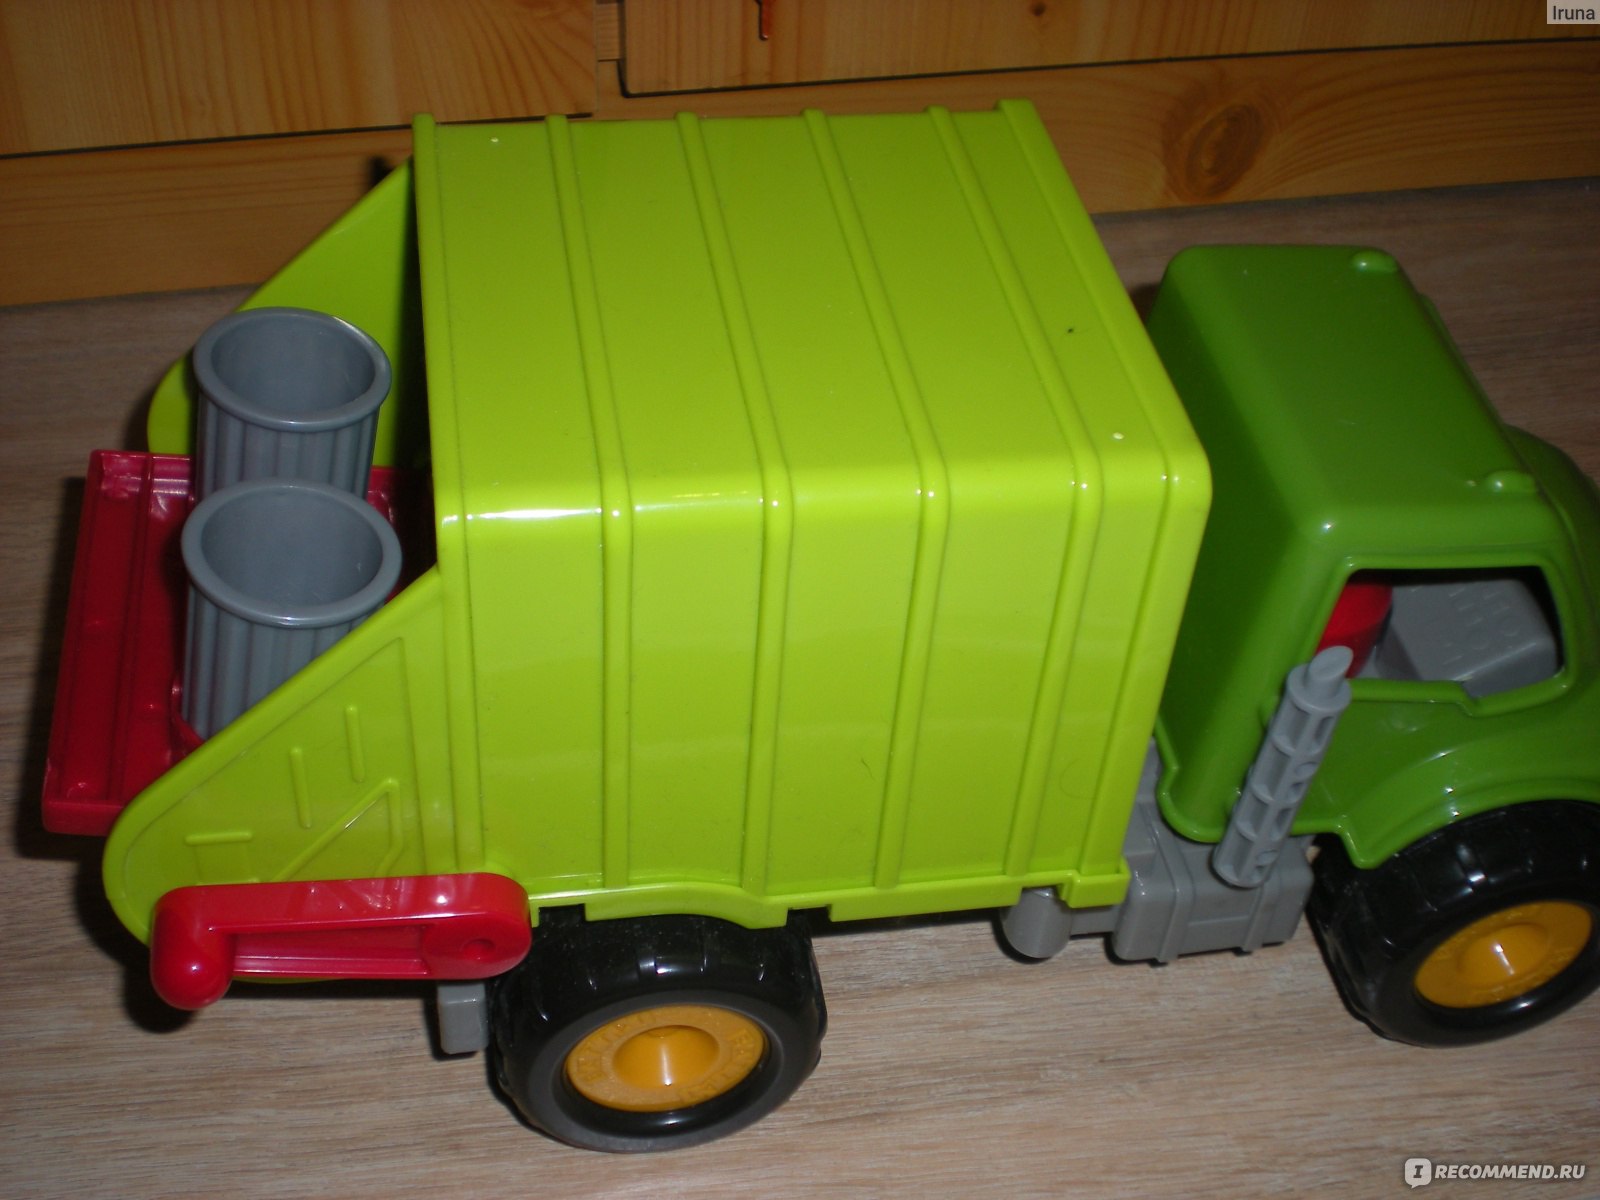 Мусоровоз зеленый. Driven Battat мусоровоз. Мусоровоз зеленый игрушка. Игрушка мусоровоз зеленый инерционный. Игрушечные мусоровозы с разноцветными баками.